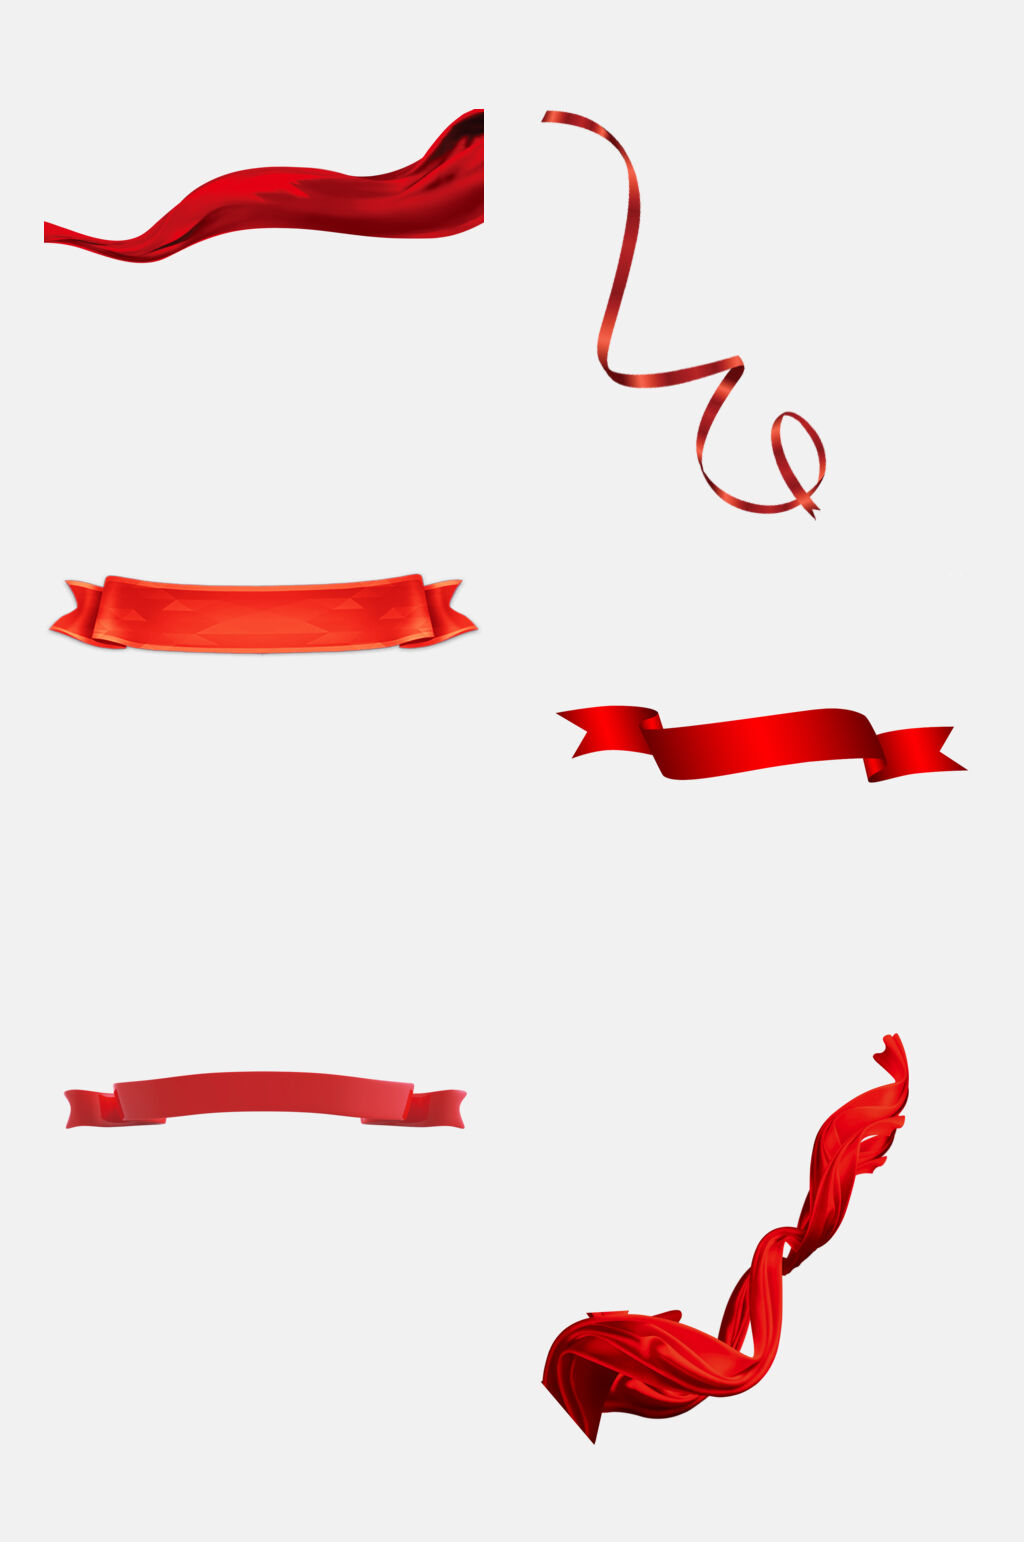 众图网独家提供经典红色彩带绸带免抠元素素材素材免费下载,本作品是